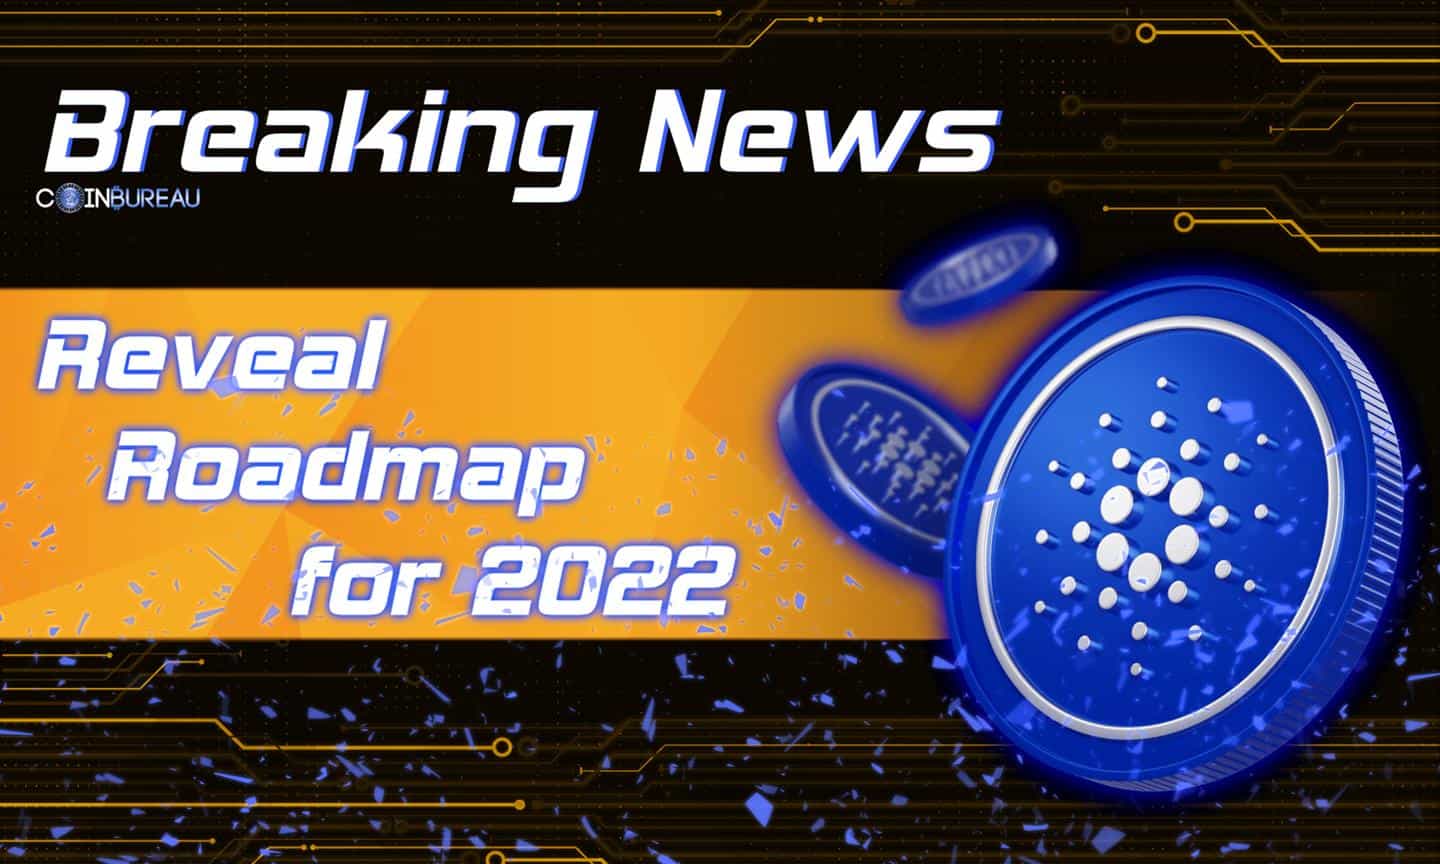 Cardano’s Charles Hoskinson Reveals Roadmap for 2022